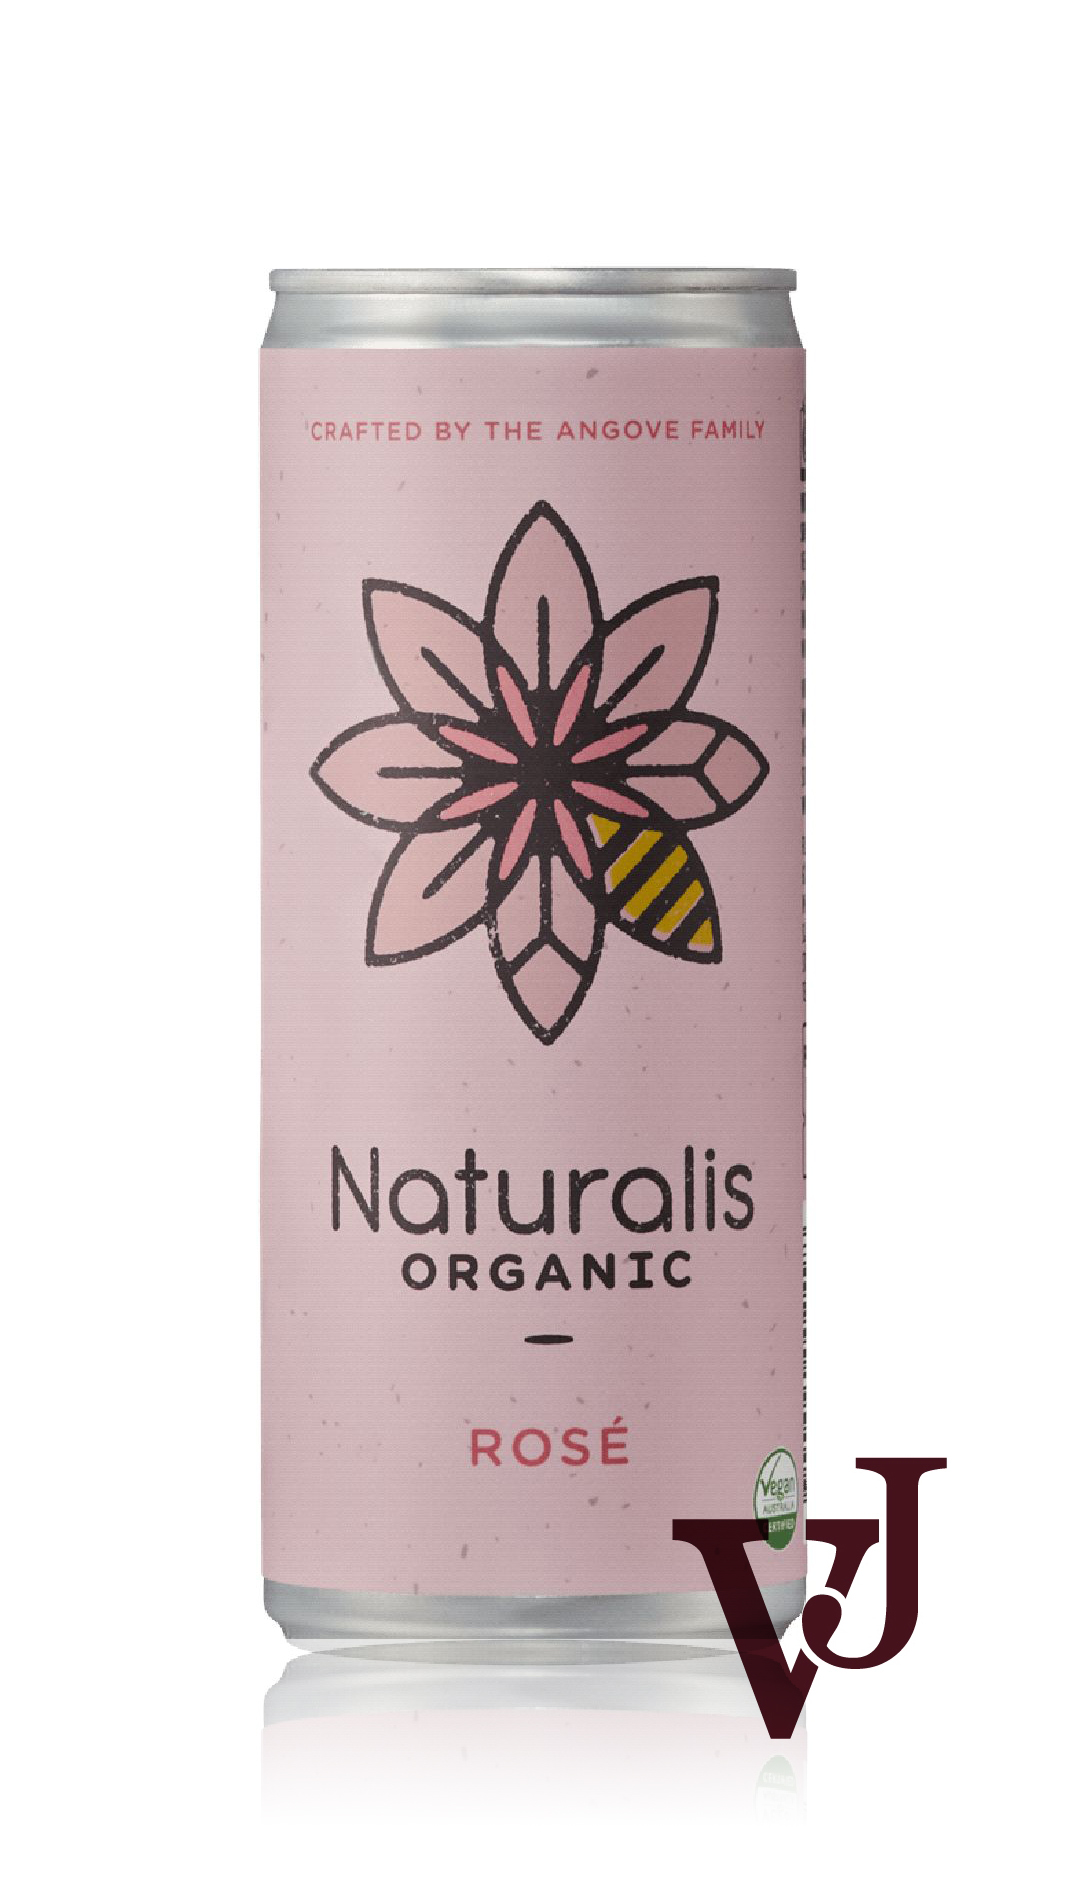 Rosé Vin - Naturalis Organic 2022 artikel nummer 9003614 från producenten Angelo Negro e Figli från området Australien